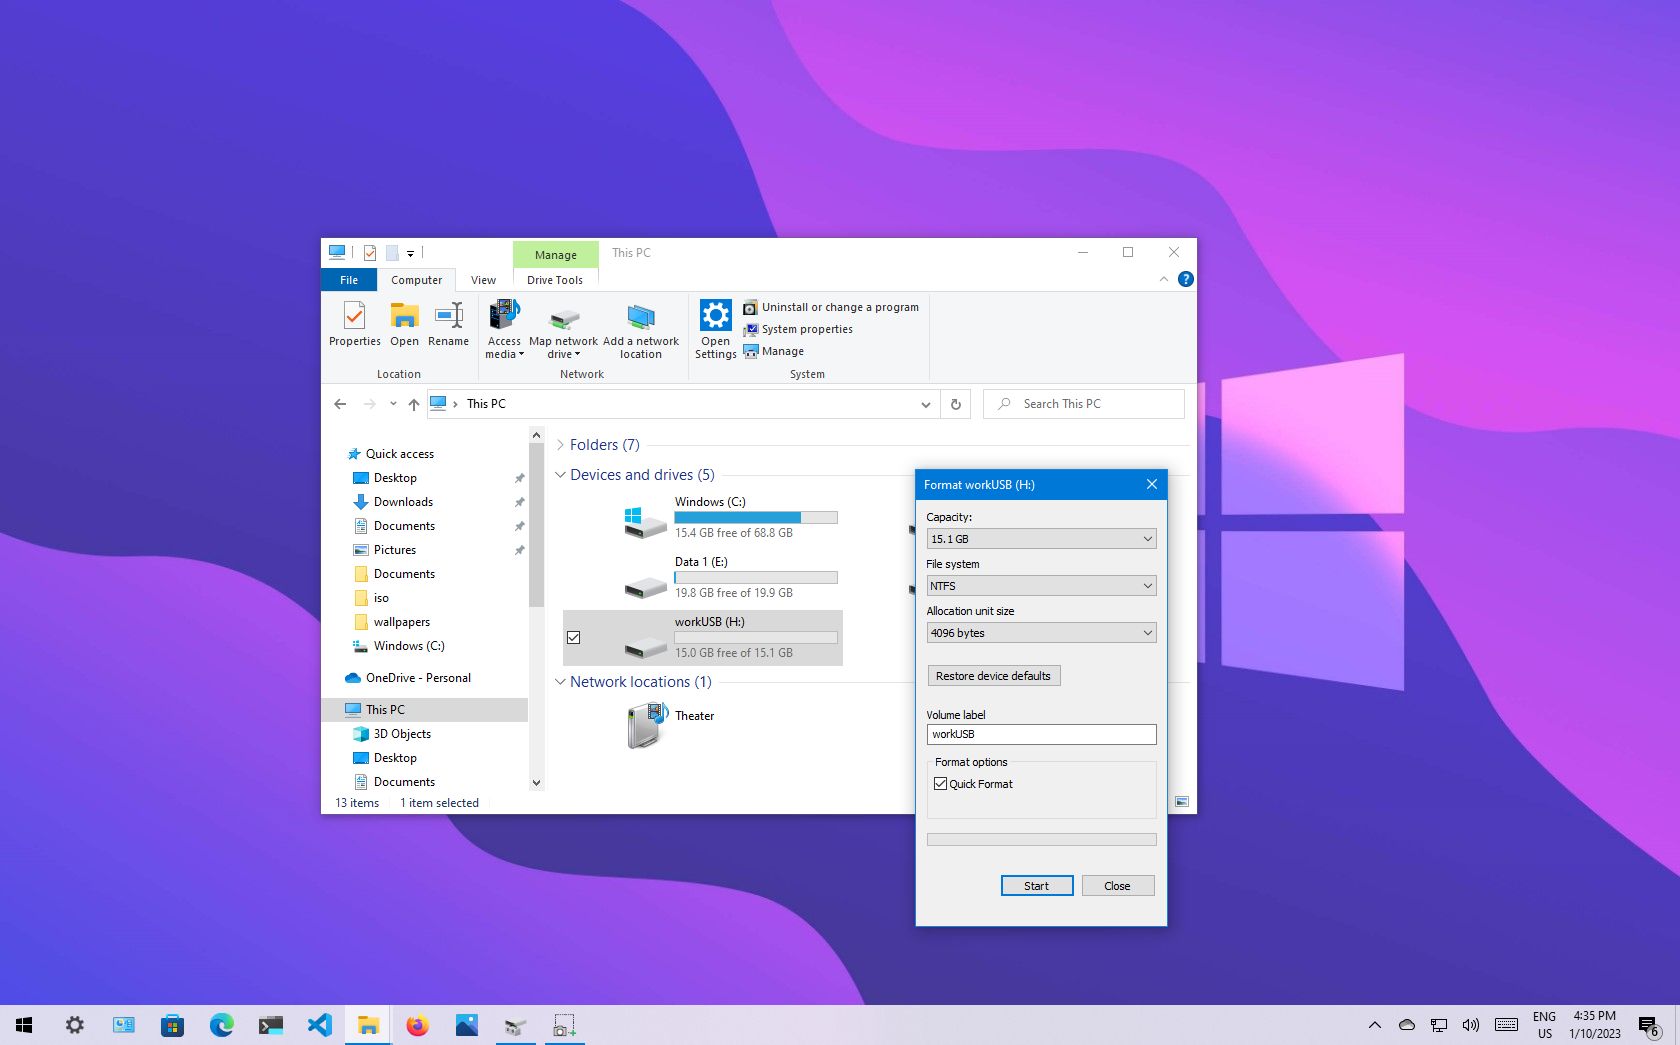 usb drive format tool windows 10